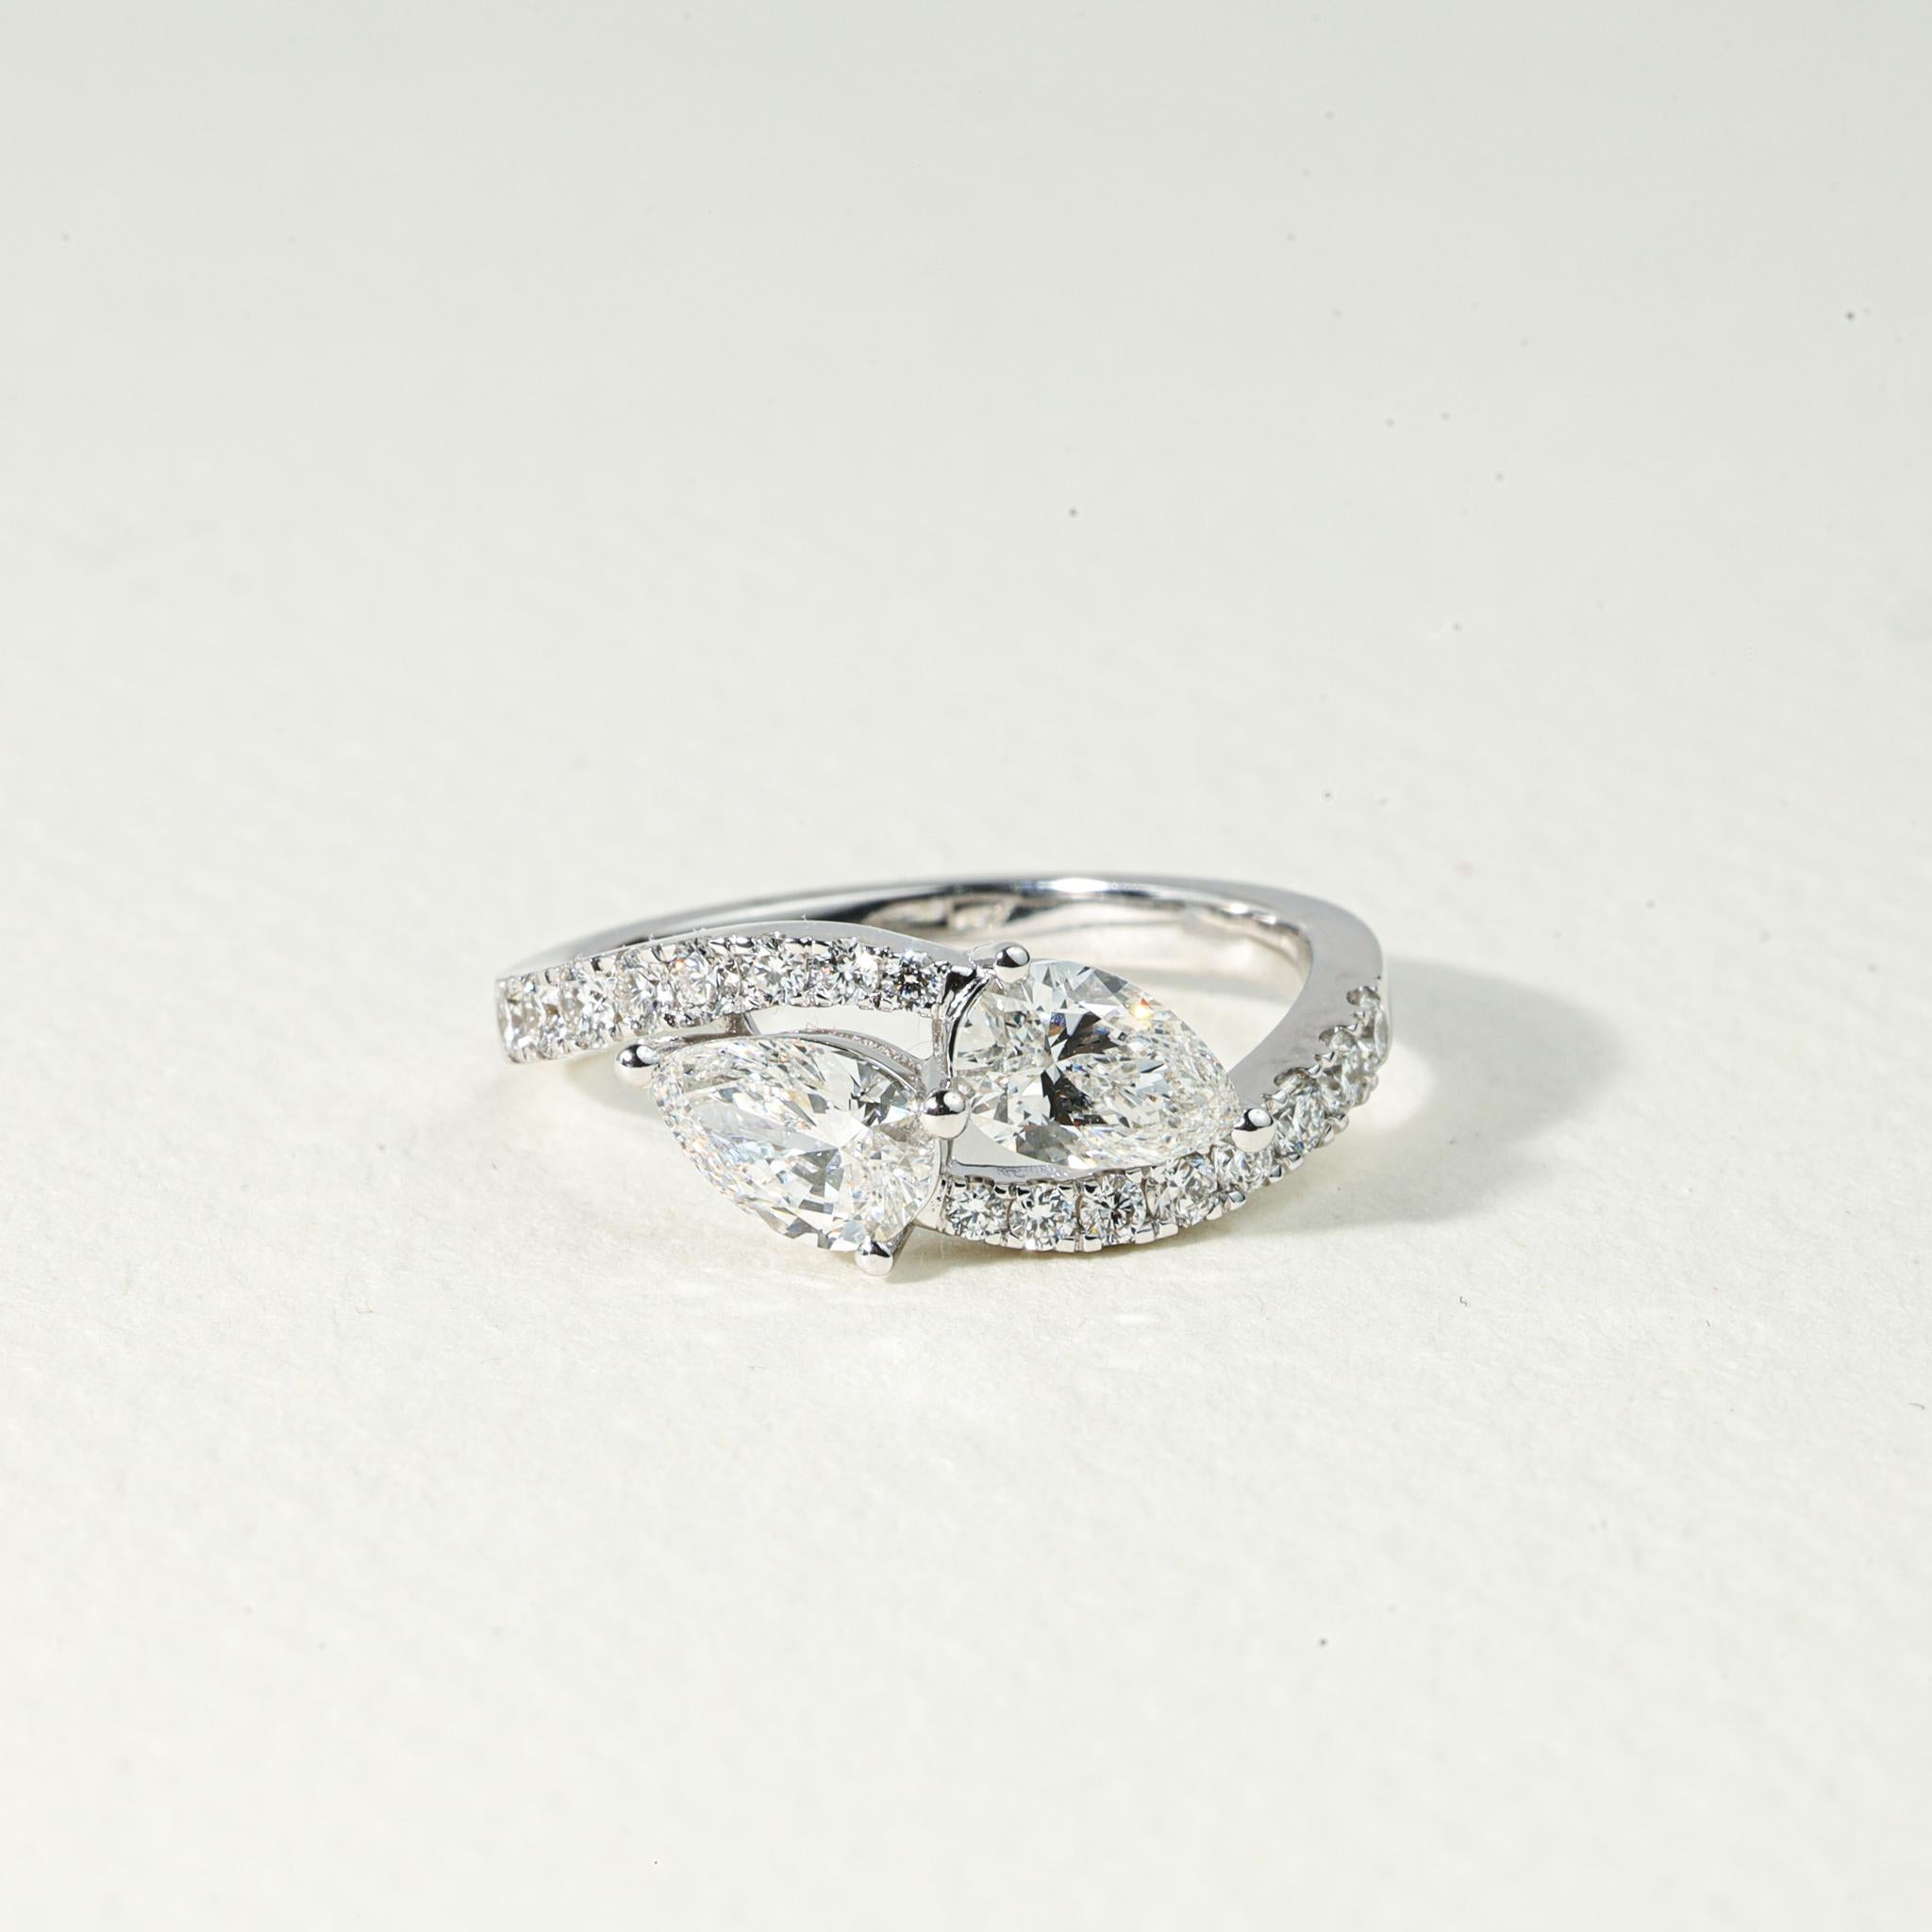 GIA Report Certified 1.5 ct Pear Cut Diamond Toi Et Moi Engagement Ring

Disponible en or blanc 18k.

Le même design peut être réalisé avec d'autres pierres précieuses sur demande.

Détails du produit :

- Or massif

- 0,75 carat pour chaque pierre